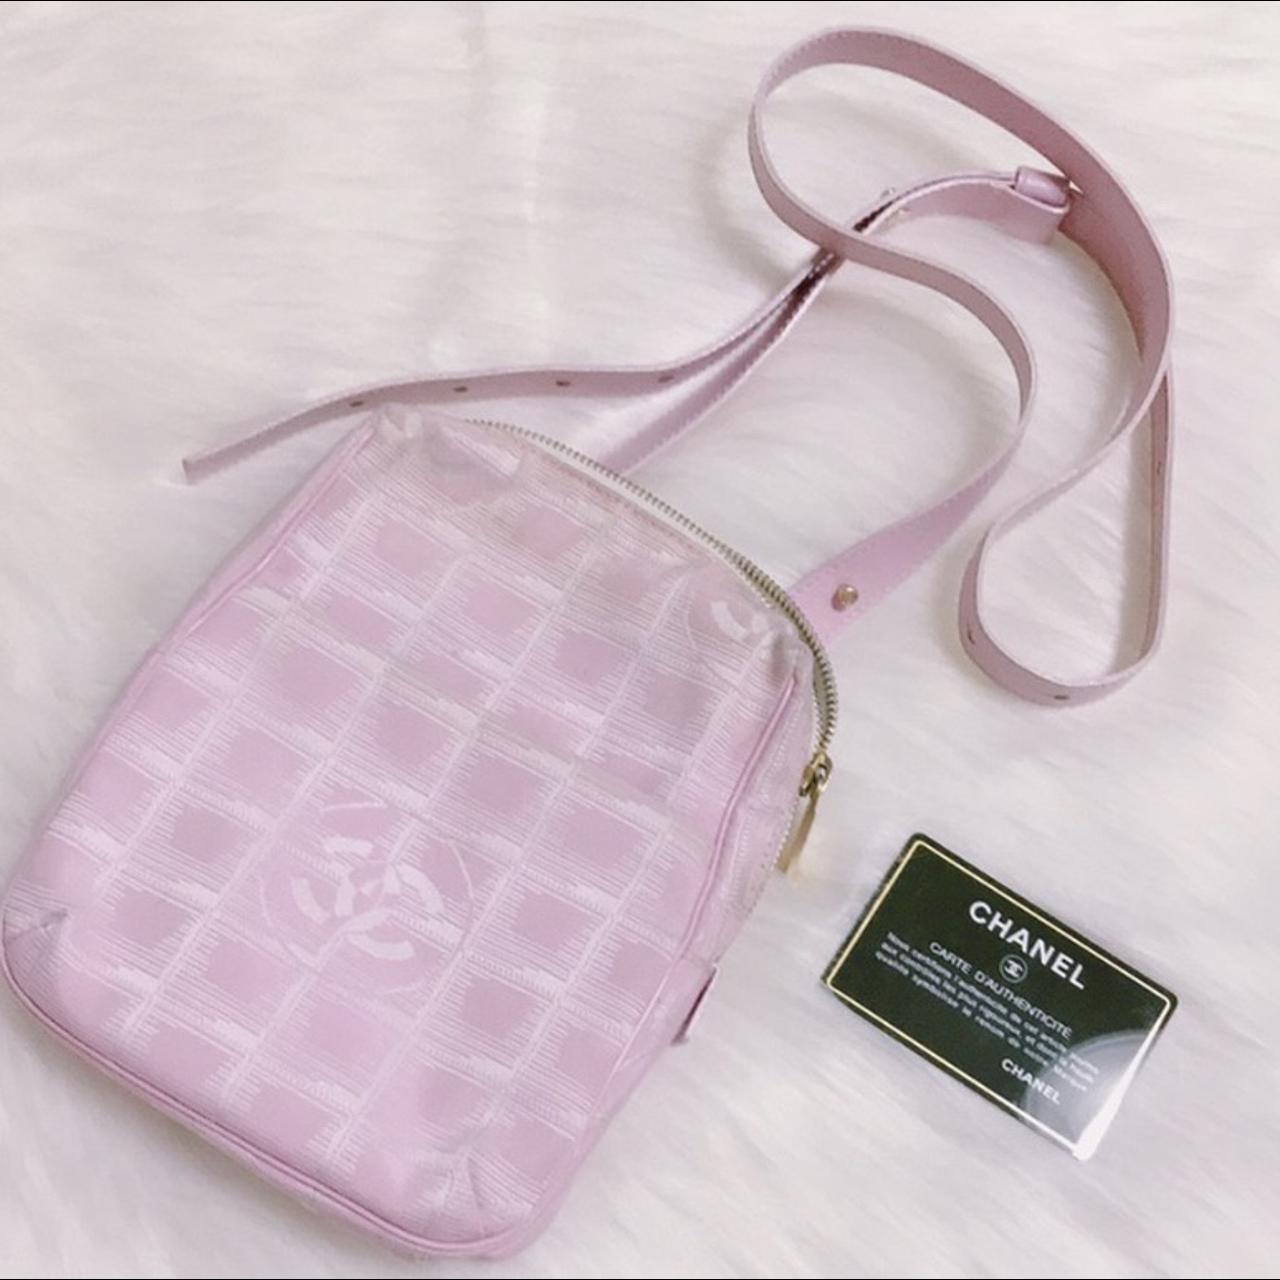 2003-2004 vintage chanel pink cc travel line shoulder bag